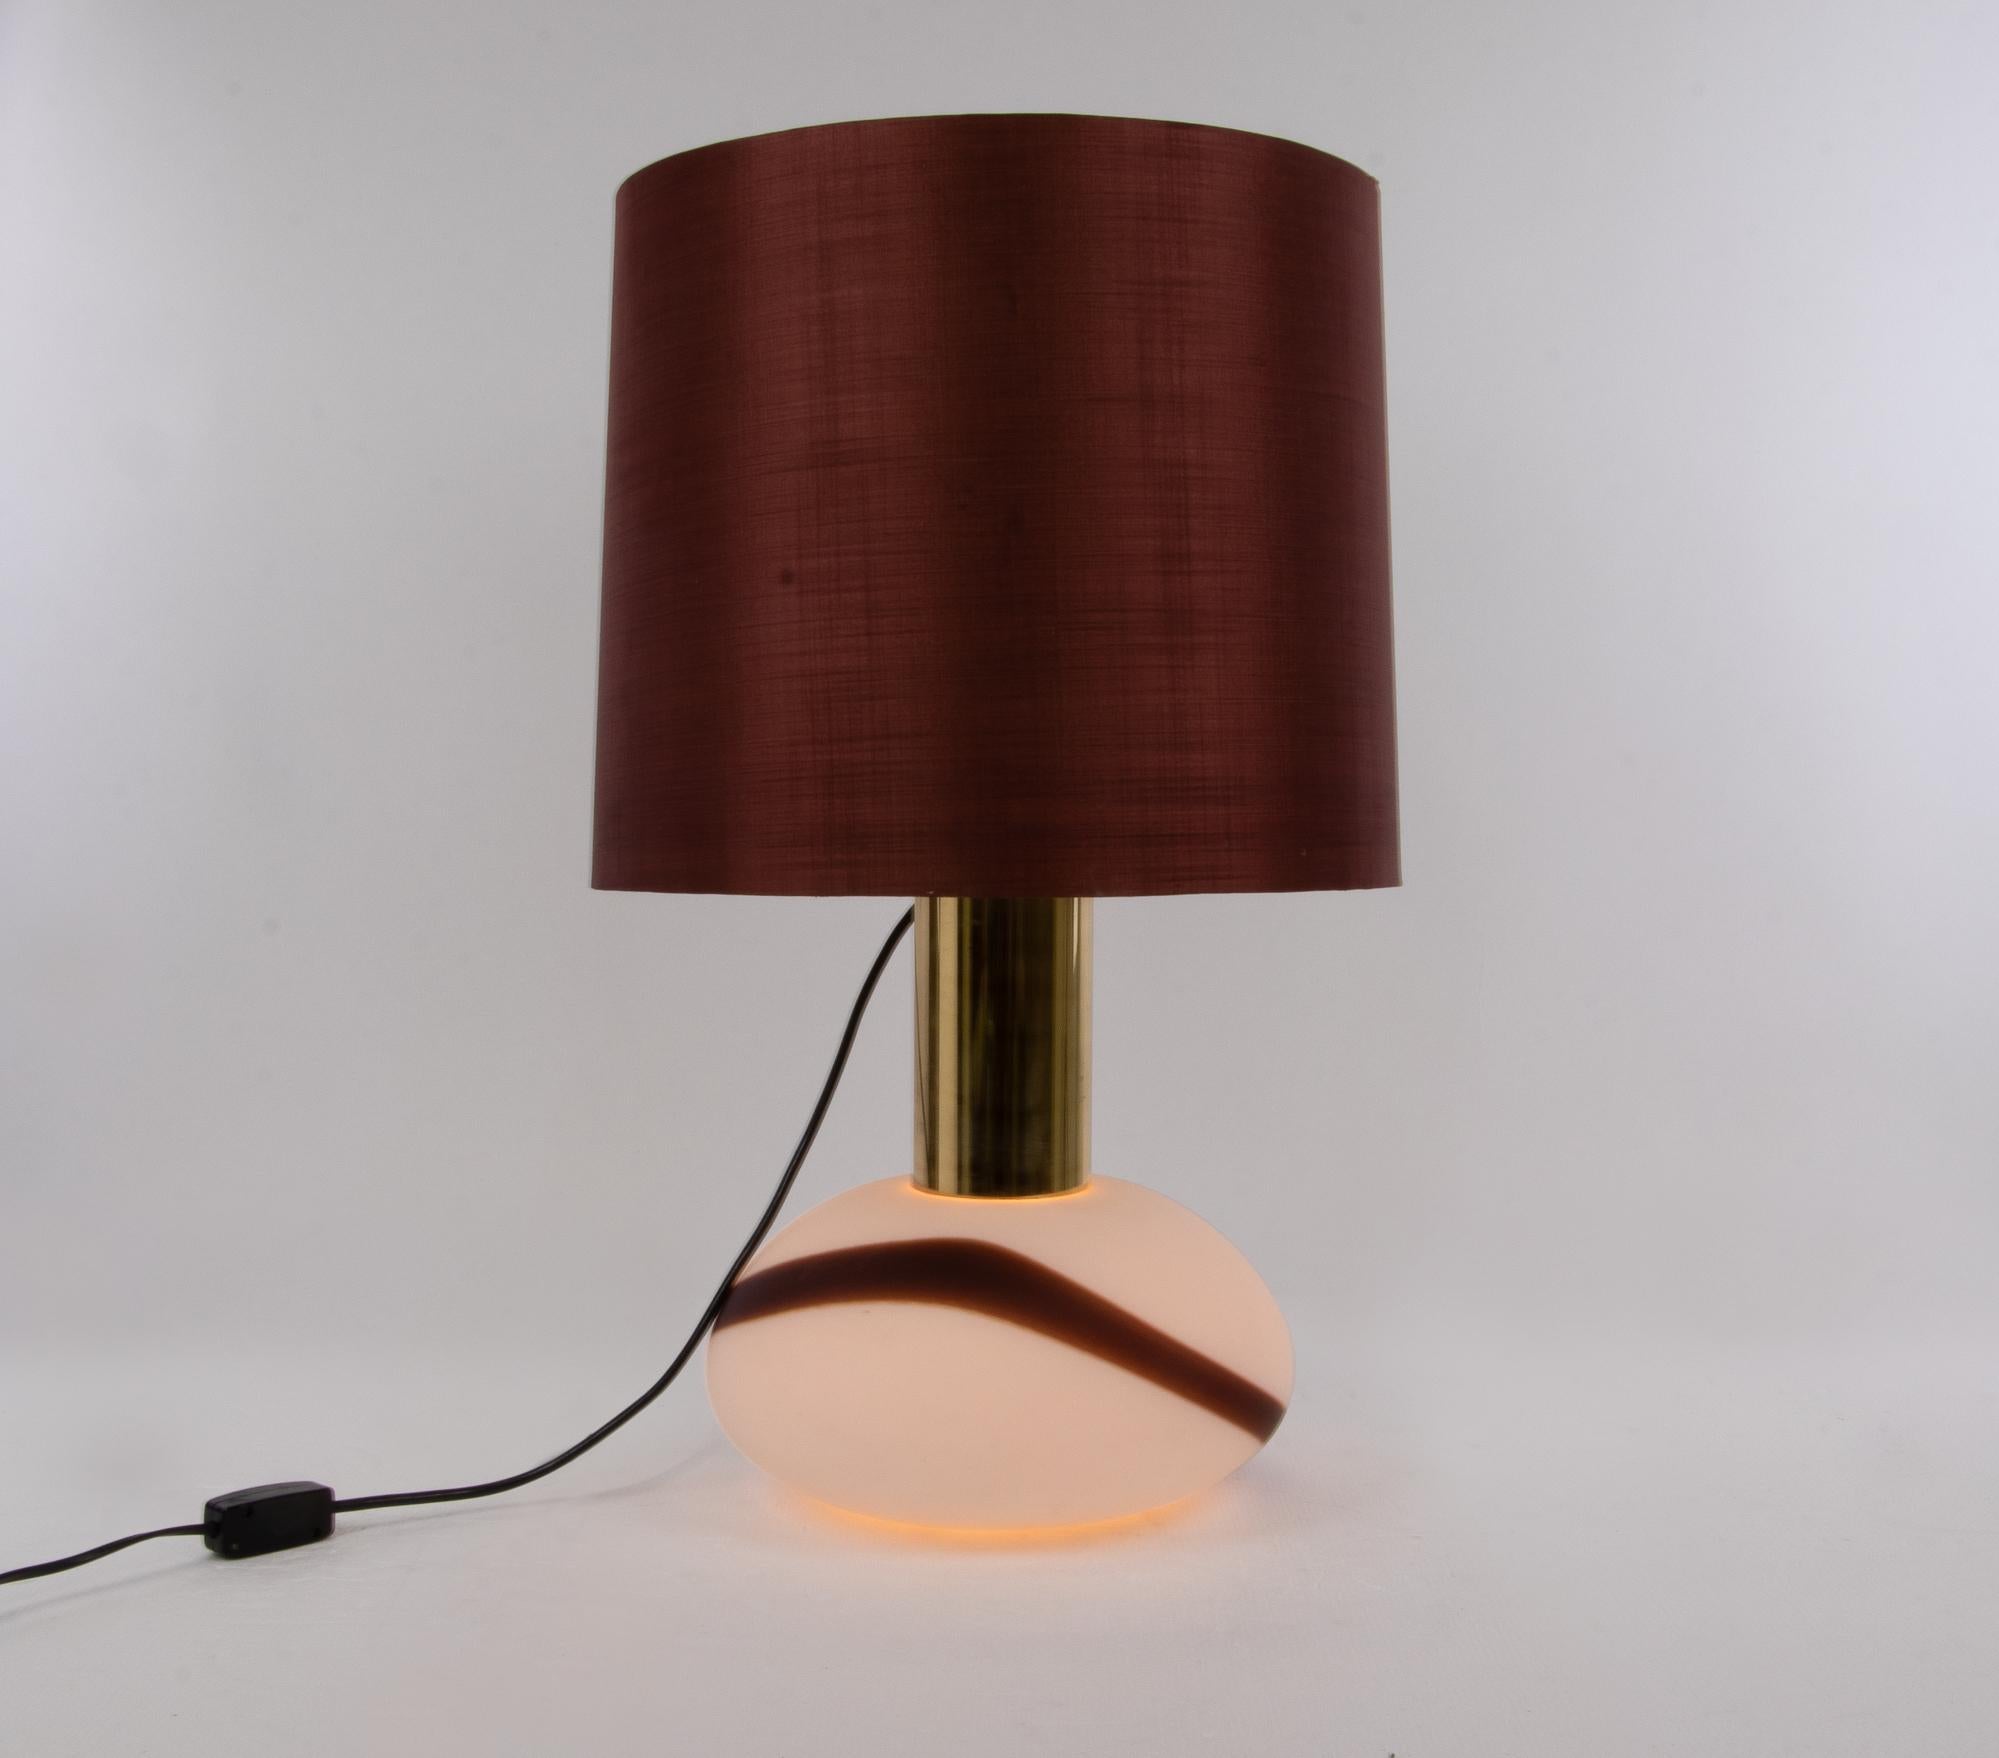 Elégante lampe de table au design vintage avec un corps en verre de Murano blanc avec des accents de couleur sur une base en laiton. Les ampoules peuvent être allumées séparément (0-1-2-1-0). L'abat-jour est en tissu. Fabriqué par la société